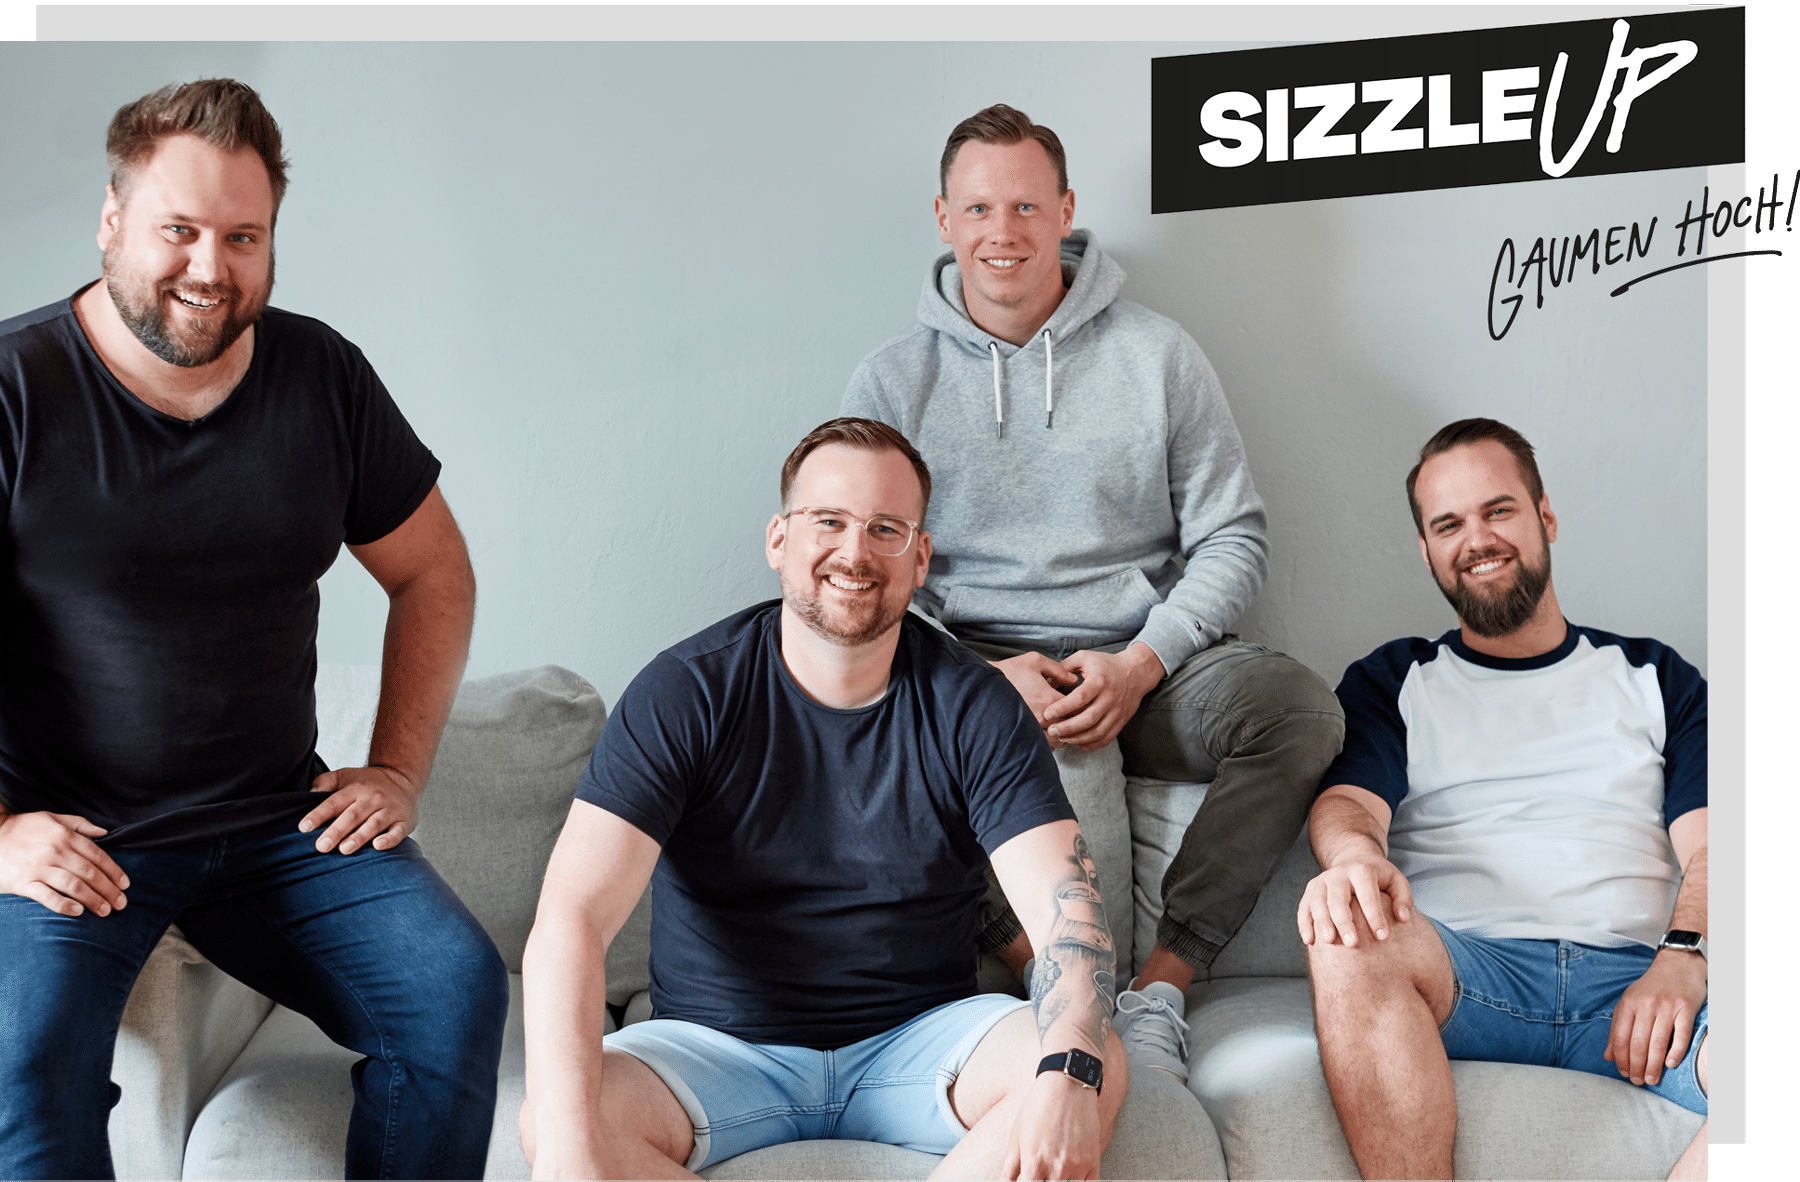 SizzleUp-Crew